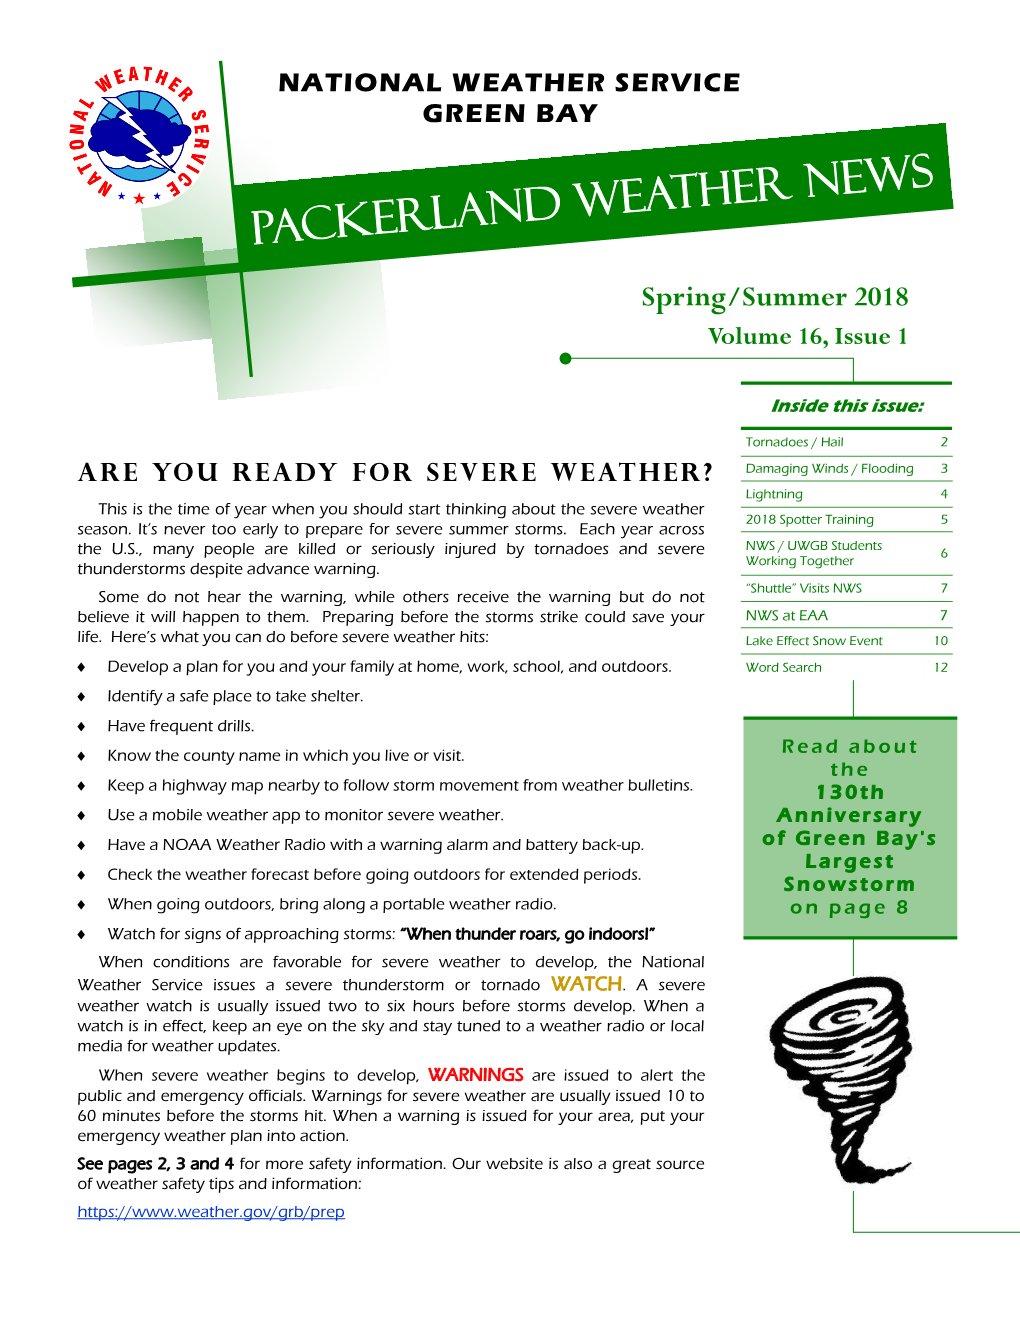 PACKERLAND WEATHER News Spring/Summer 2018 Volume 16, Issue 1